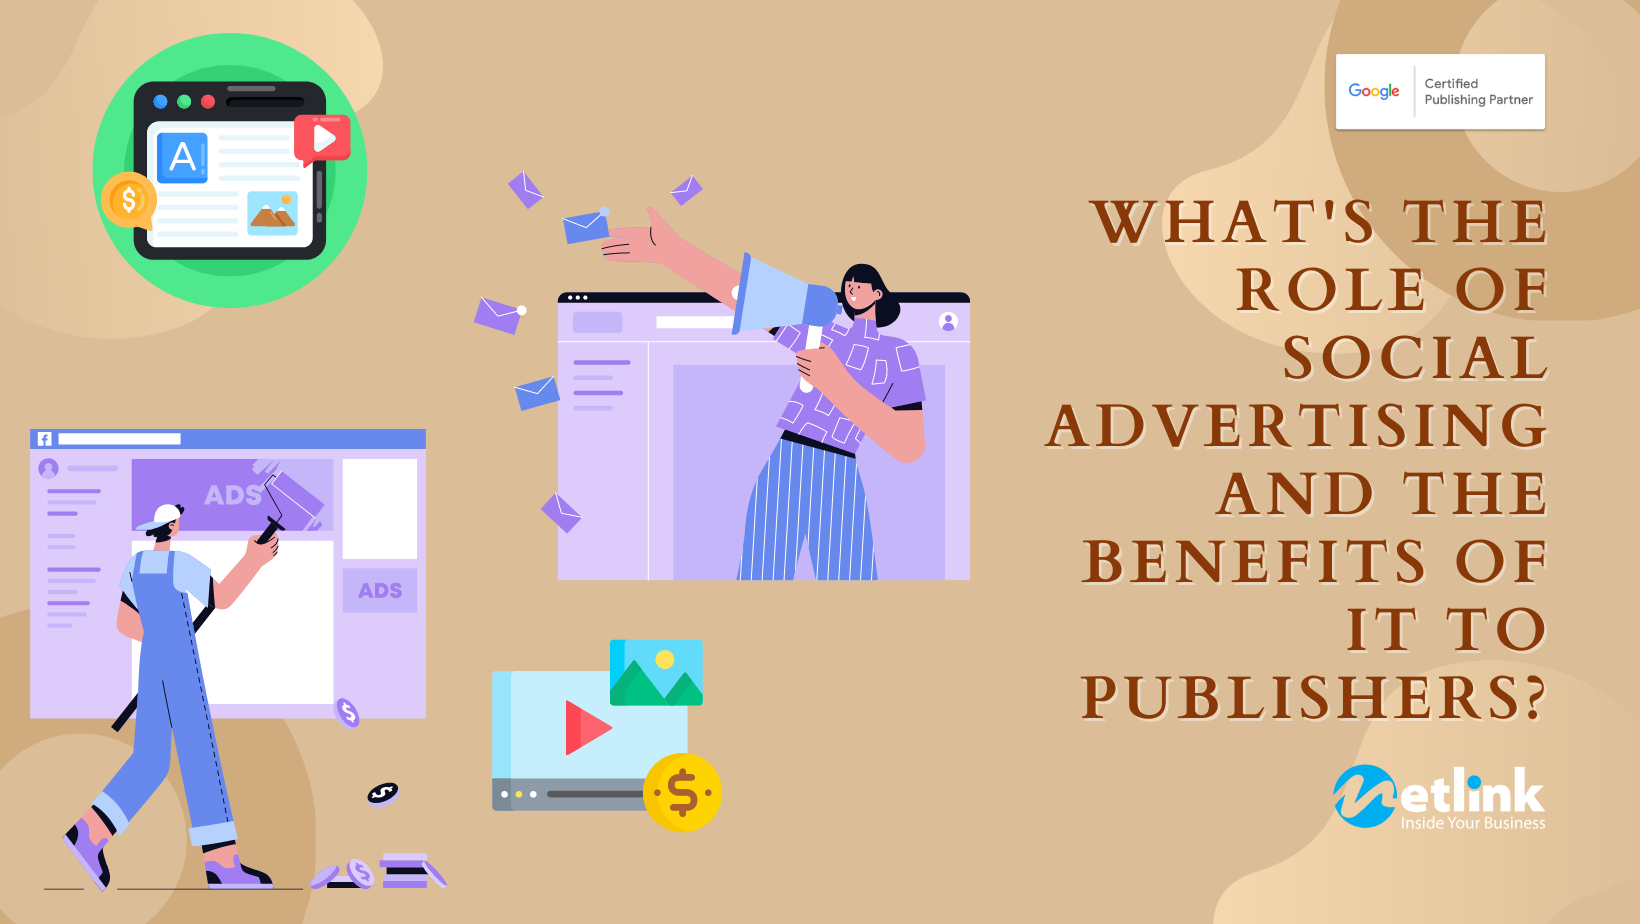 Vai trò của quảng cáo trên mạng xã hội và lợi ích của nó đối với nhà xuất bản là gì?